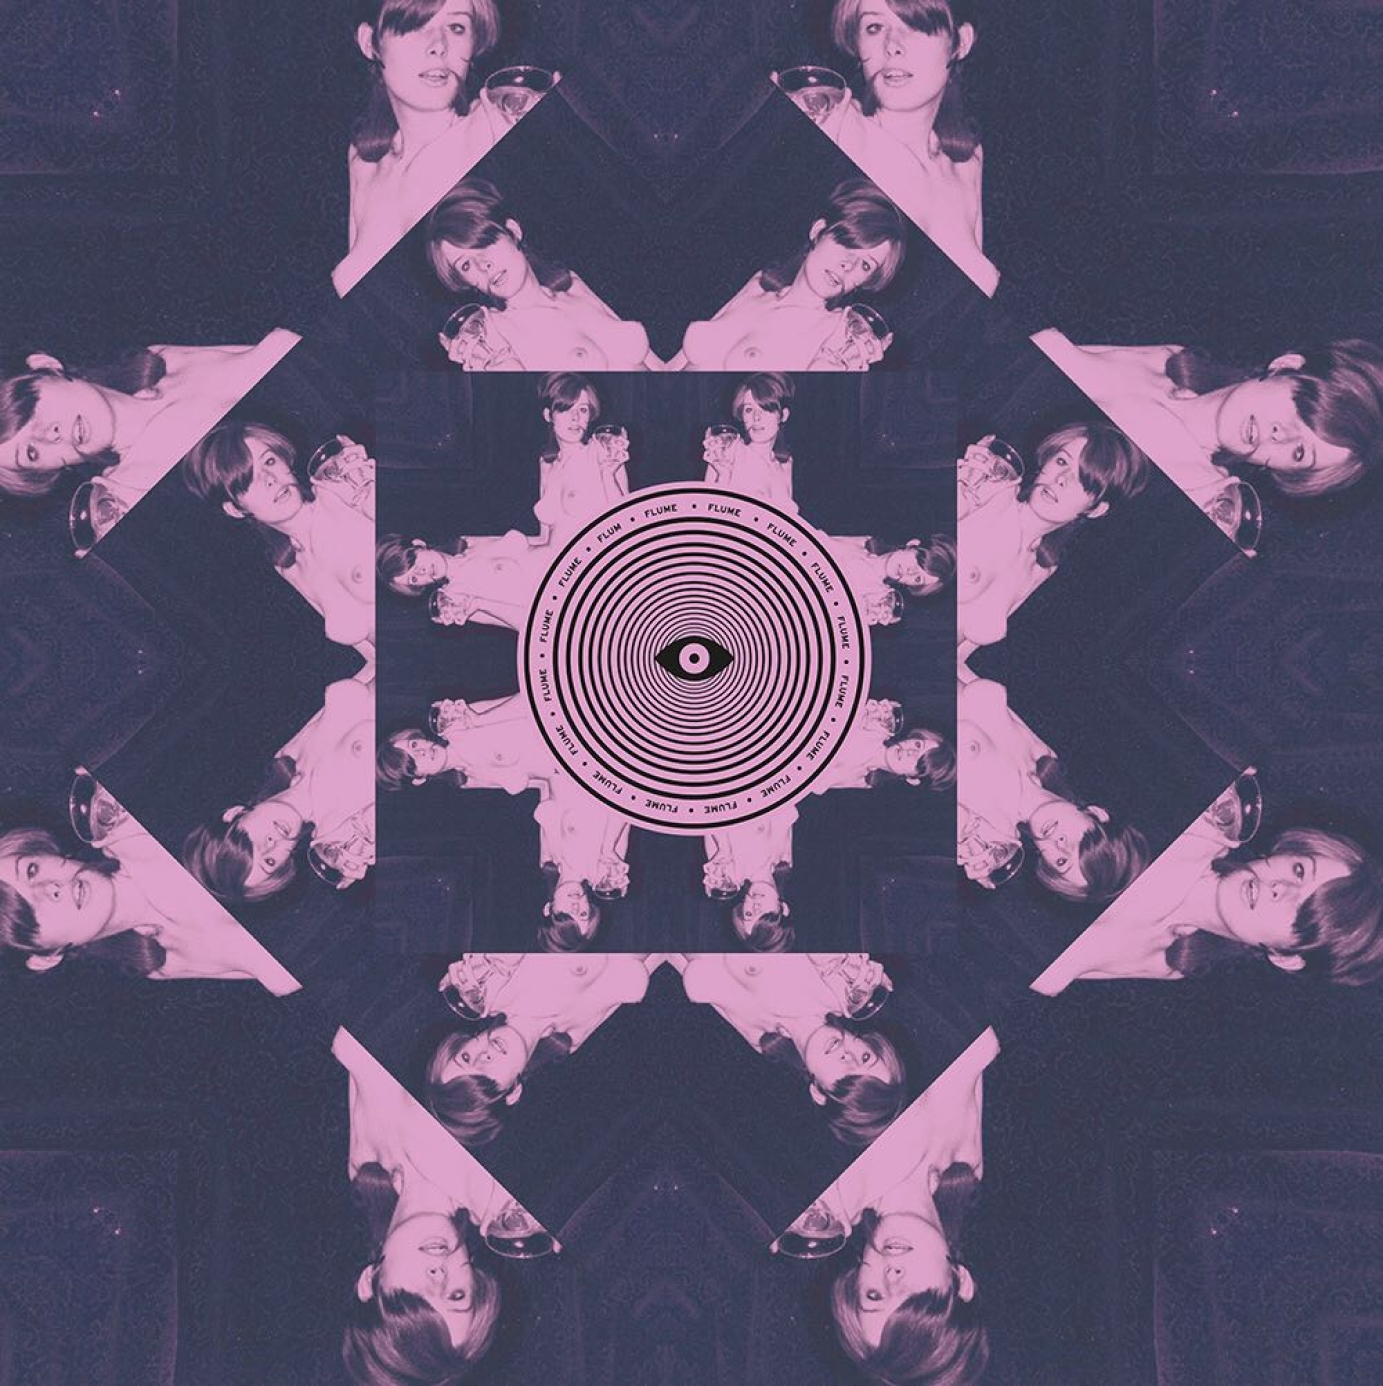 Flume | 'Flume' (2012) Album Teaser (Visualiser)